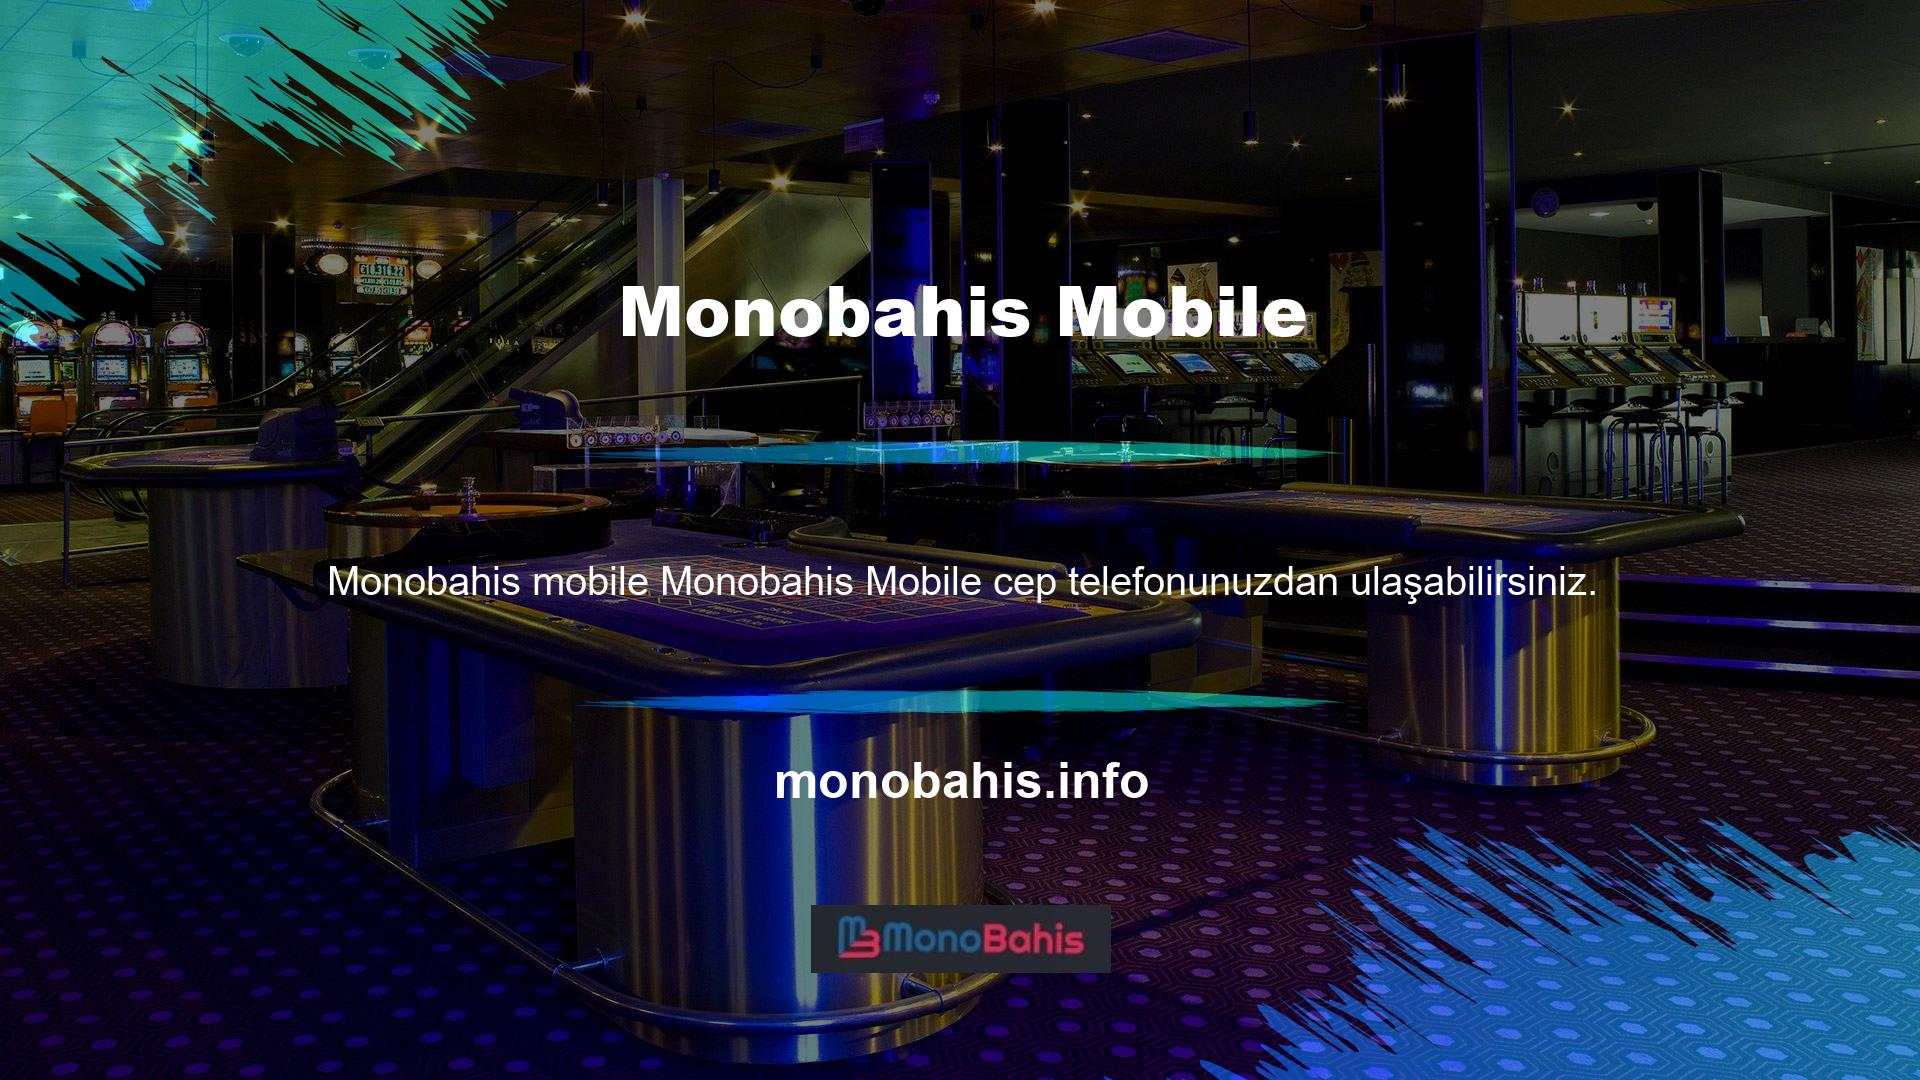 Monobahis mobil tıb ve btk'nin bahis piyasasına birçok seçenek sunduğu söylenebilir